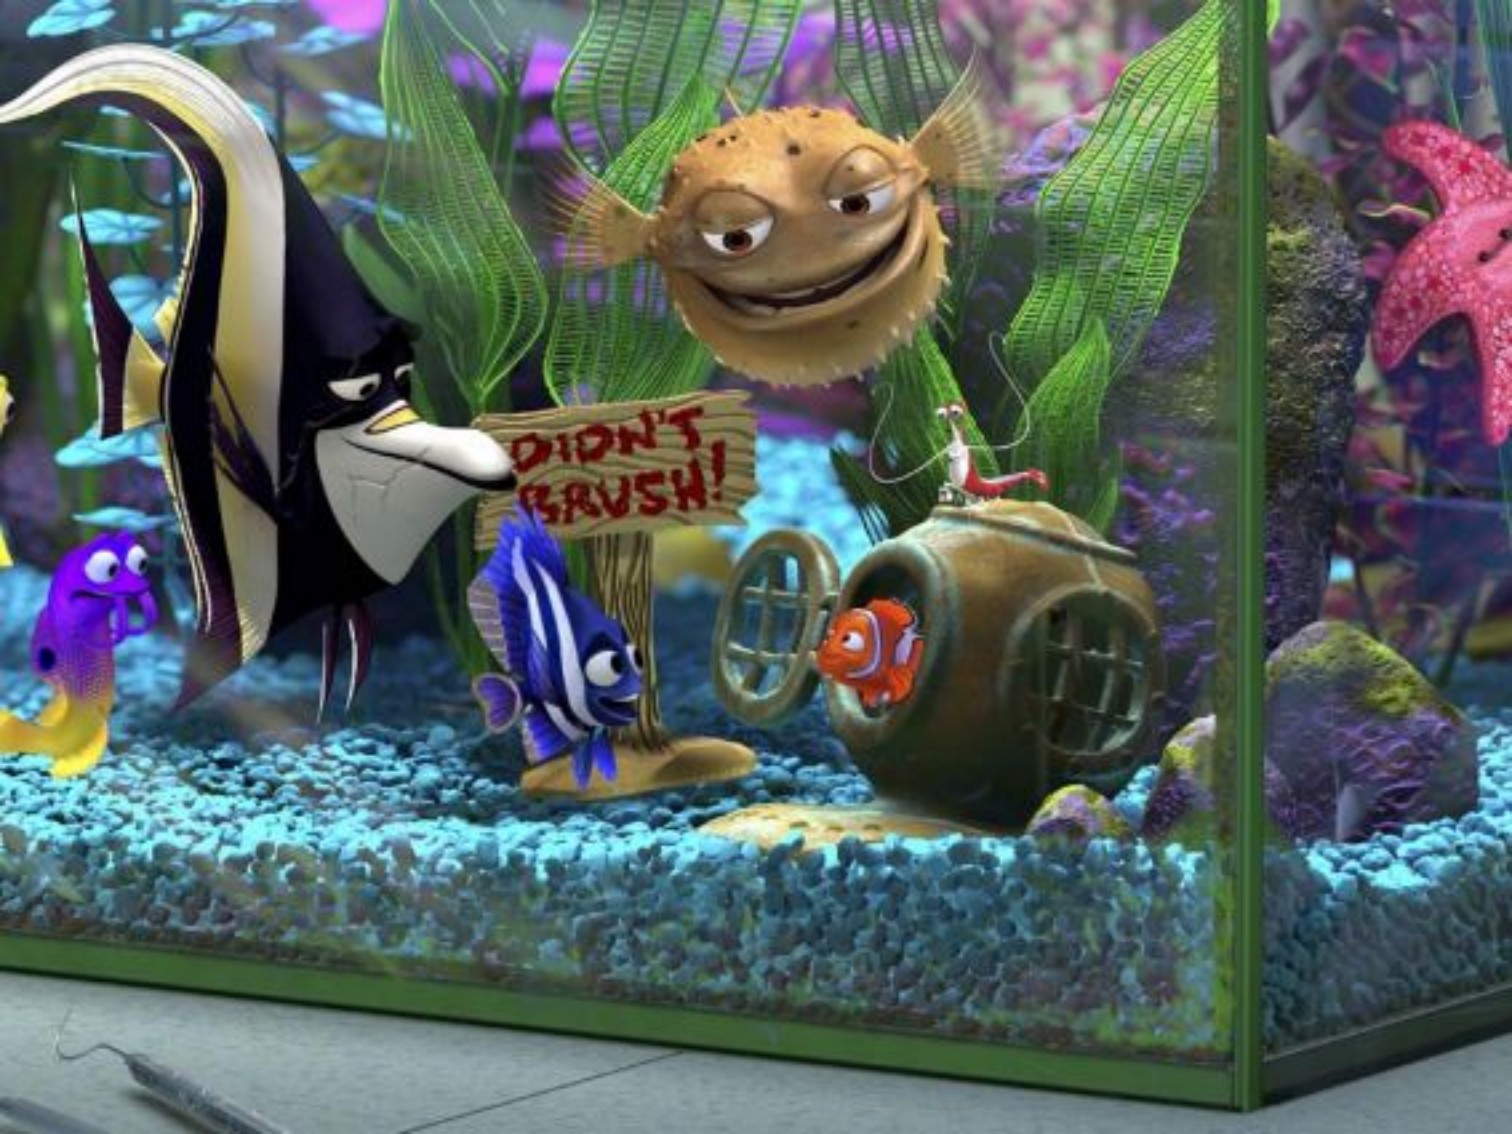 Immagini Alla ricerca di Nemo - L'acquario